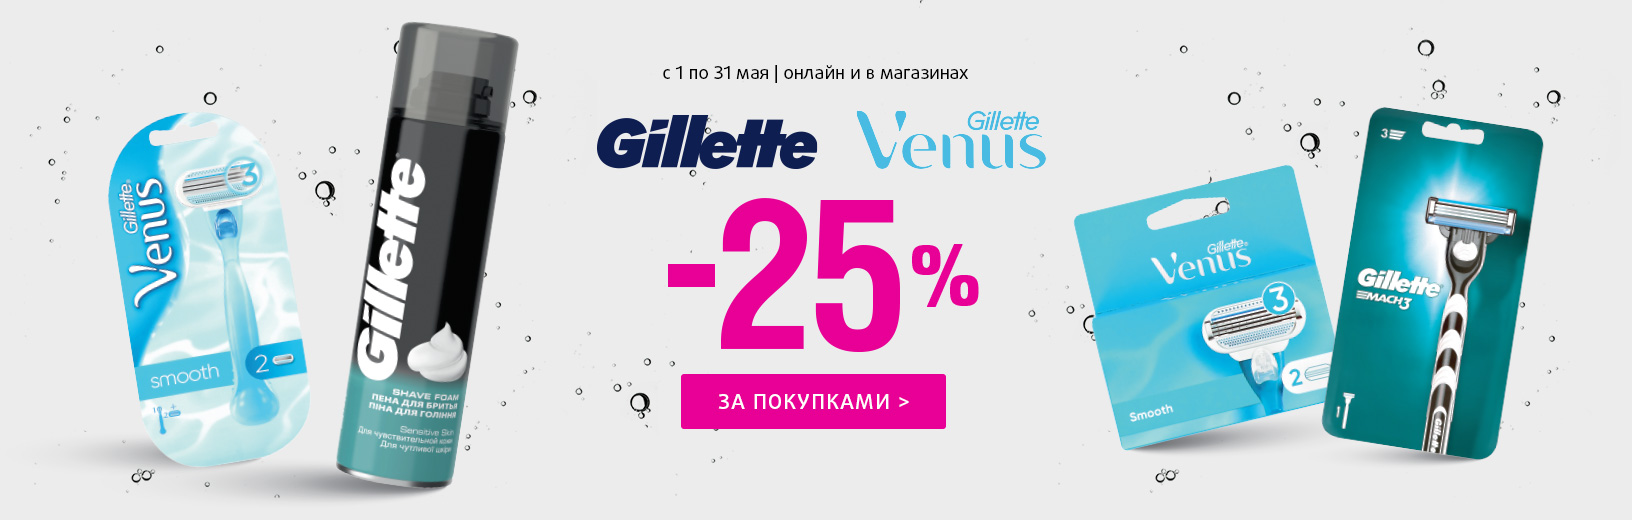 Фестиваль GILLETTE, VENUS: скидка -25%!	